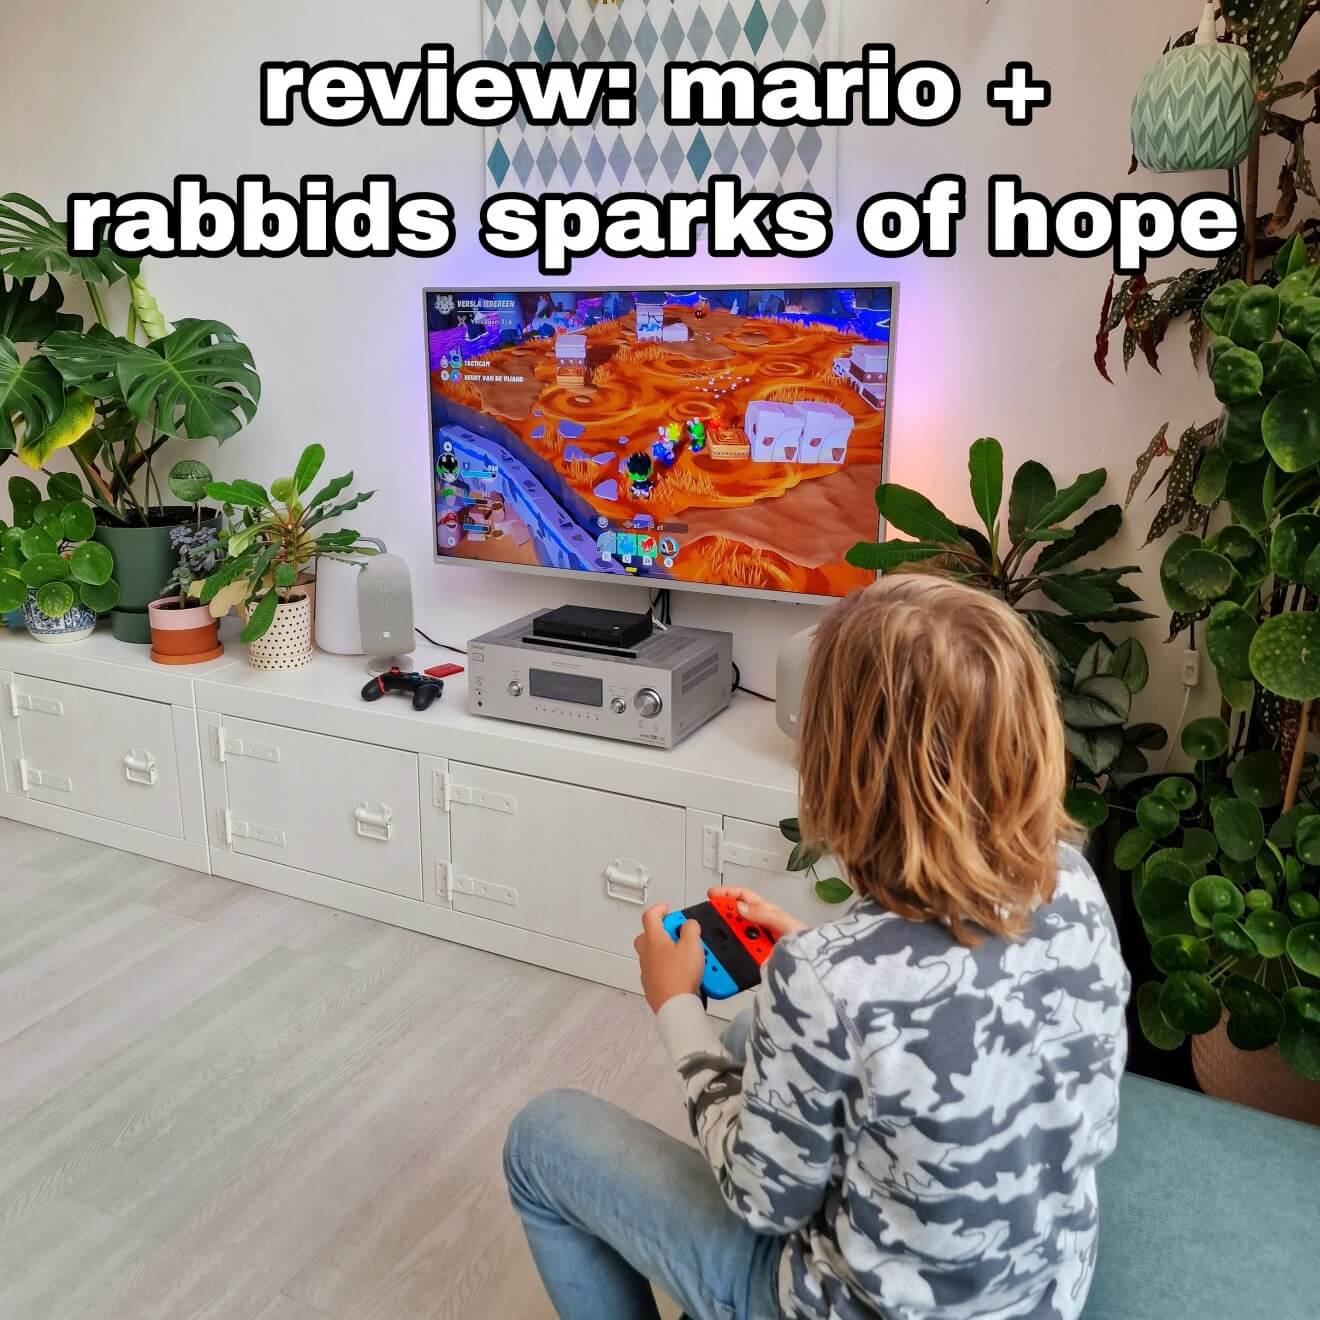 Mario + Rabbids Sparks of Hope - Nintendo Switch game review. Mario + Rabbids Sparks of Hope is een nieuwe game voor de Nintendo Switch! Mario en de Rabbids beleven wederom samen een avontuur. Ditmaal een intergalactisch avontuur. Dennis en zoonlief vinden deze game een dikke aanrader, tijd voor een review dus!